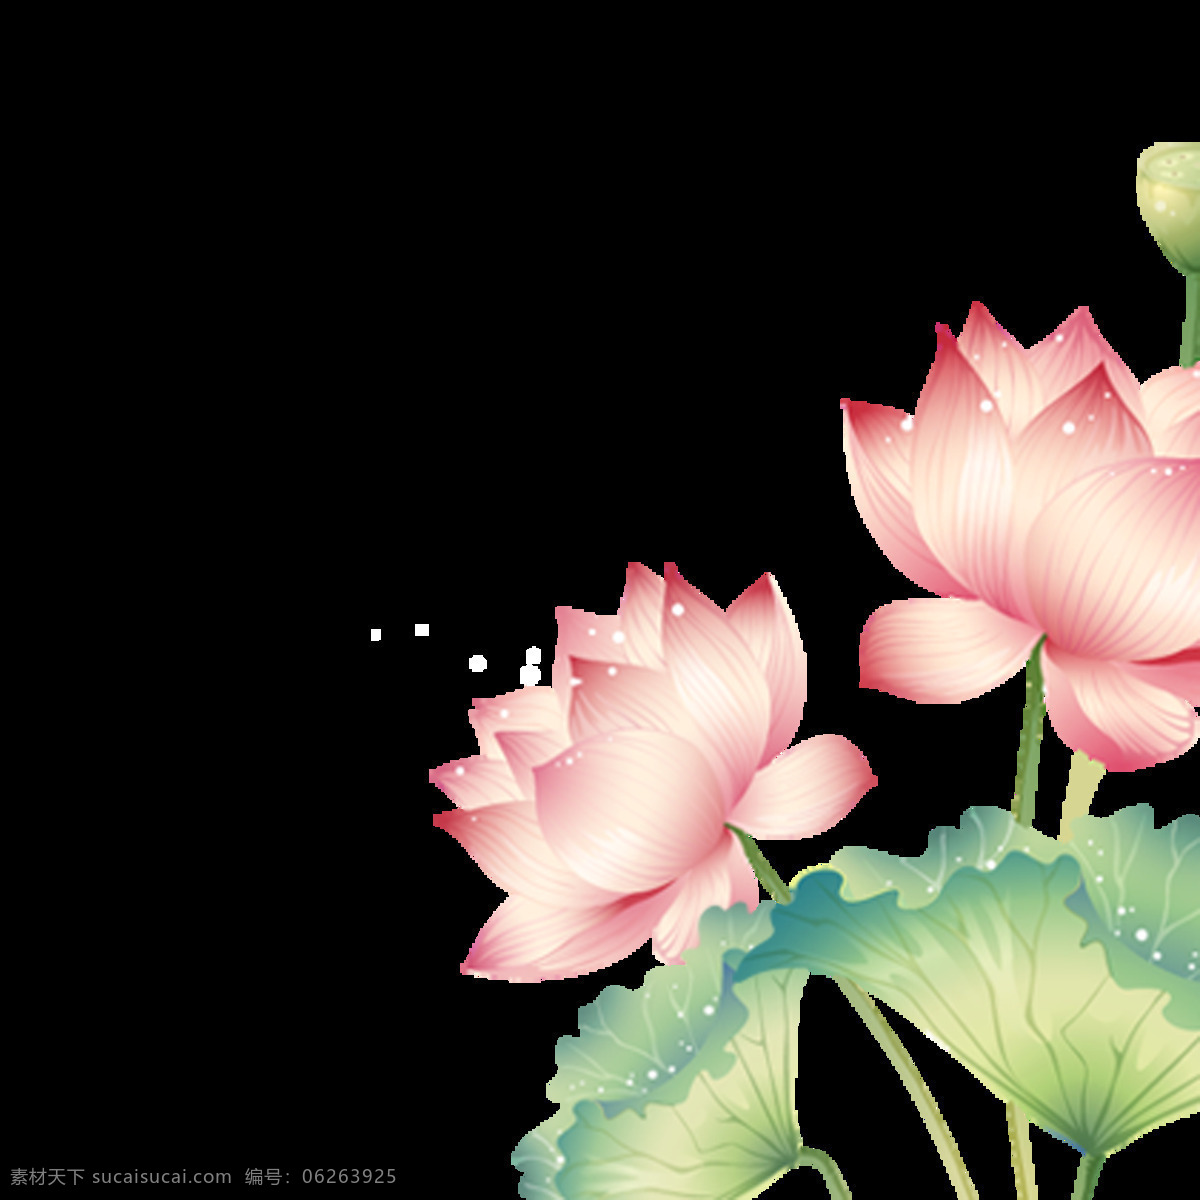 彩绘 荷花 图案 元素 抽象画 抽象艺术 复古花朵 古风荷花 莲蓬 手绘图案 水彩花朵 水彩画 水彩图案 水墨荷花 水墨画 印花图案 中国风